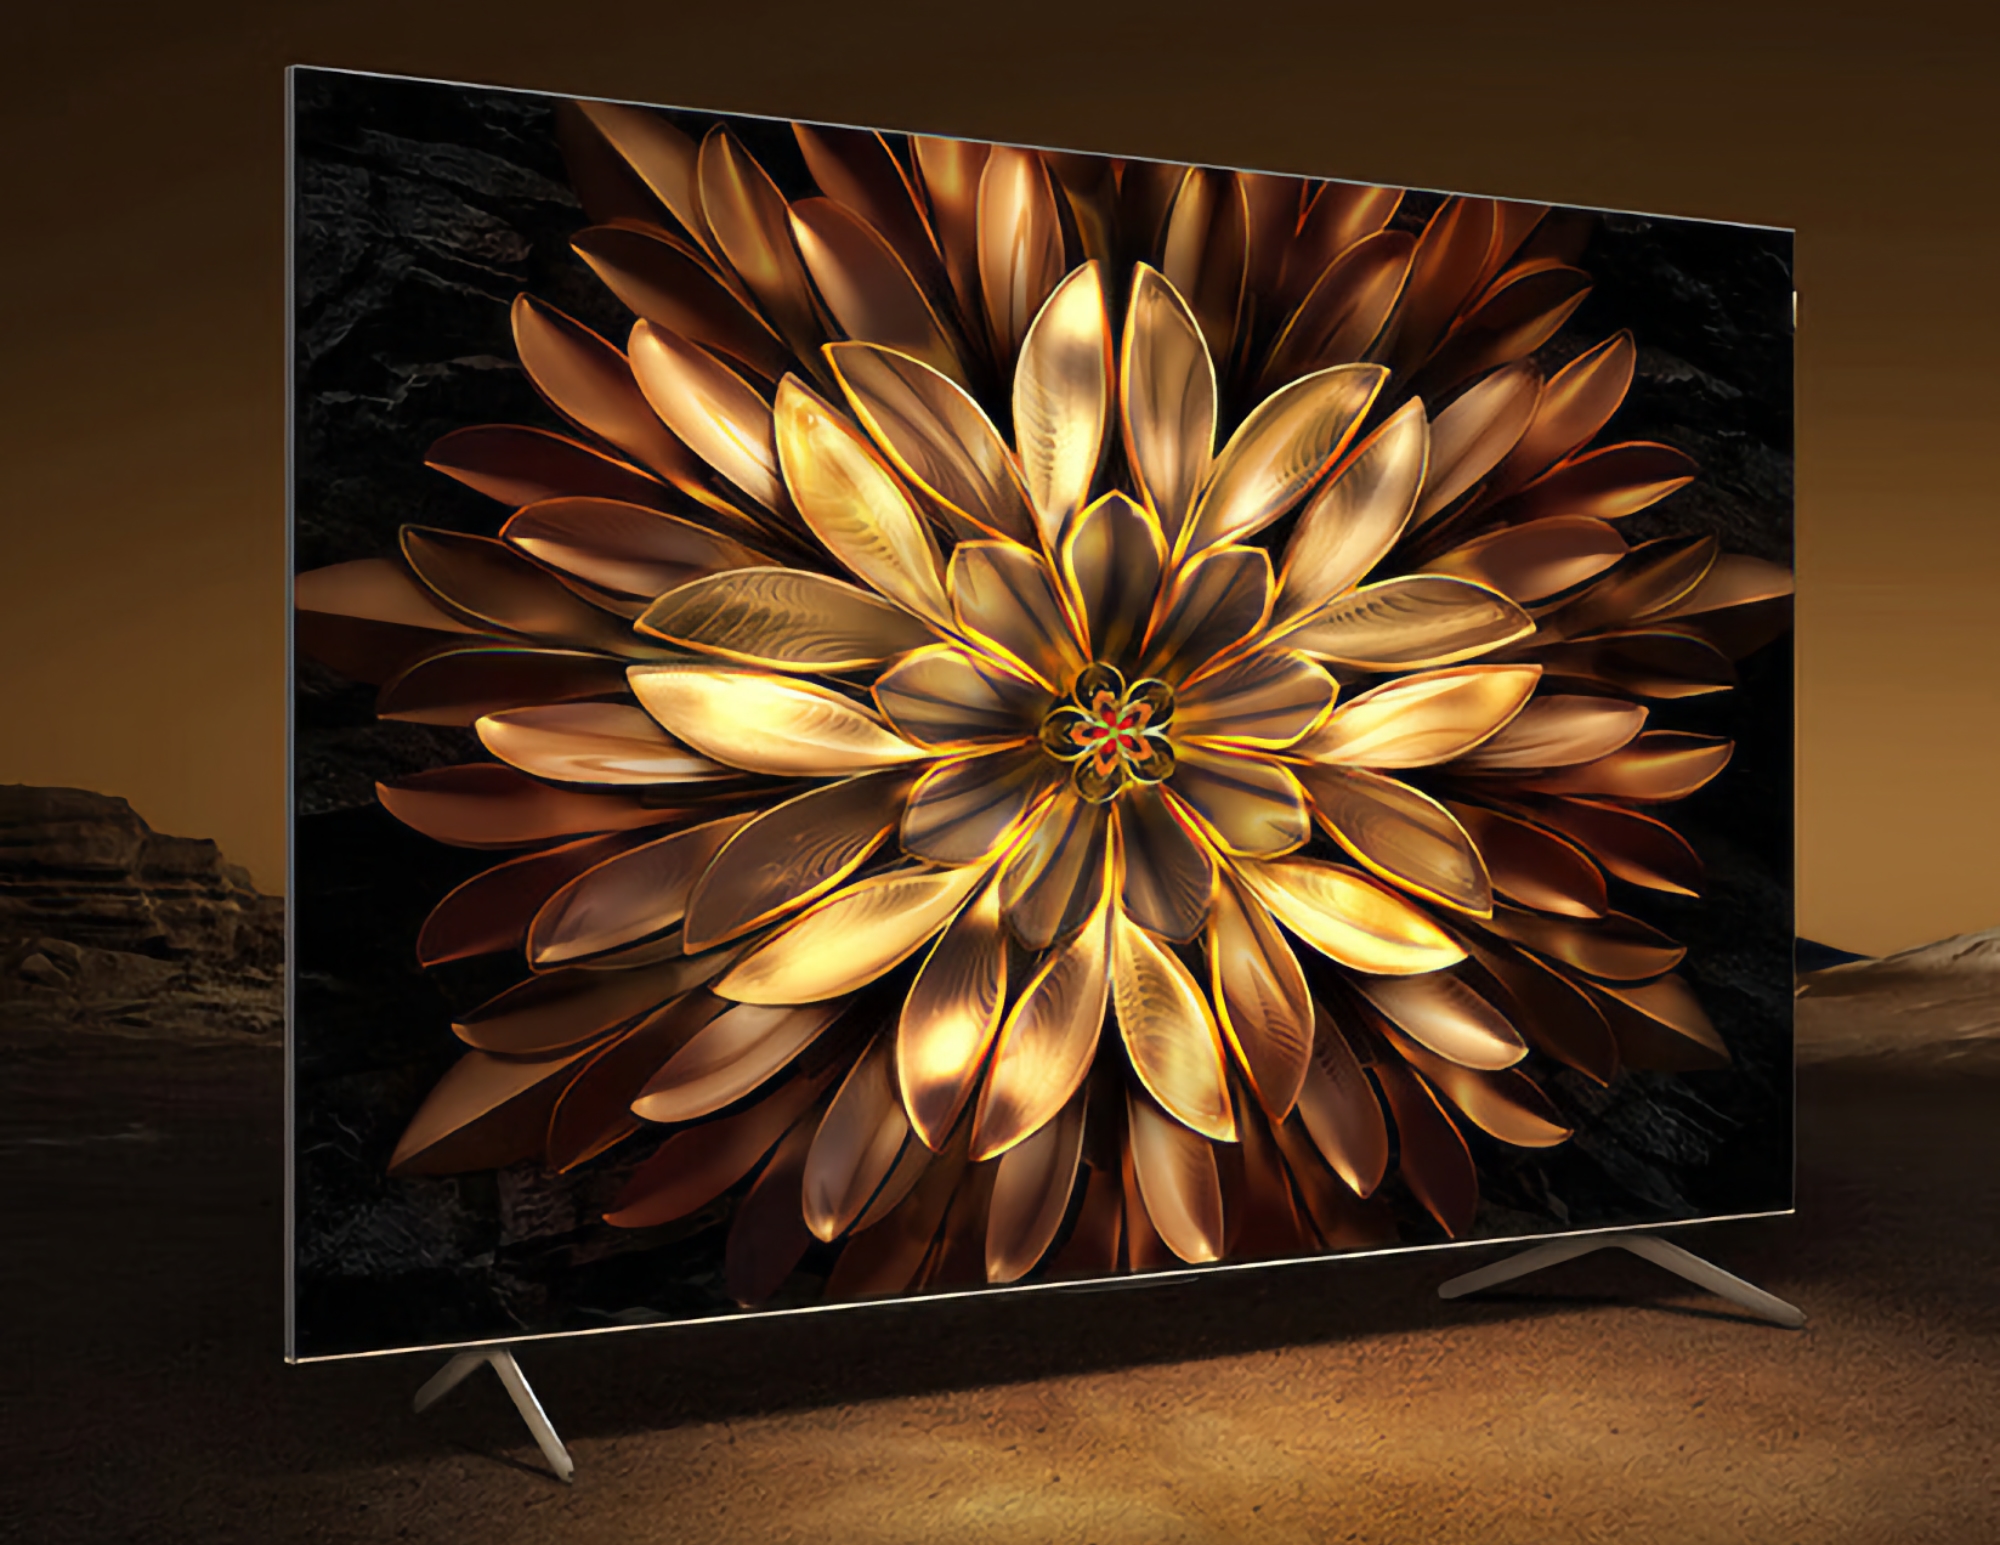 TCL C11G : gamme de téléviseurs intelligents avec écrans 4K de 55 à 75 pouces et taux de rafraîchissement de 144 Hz